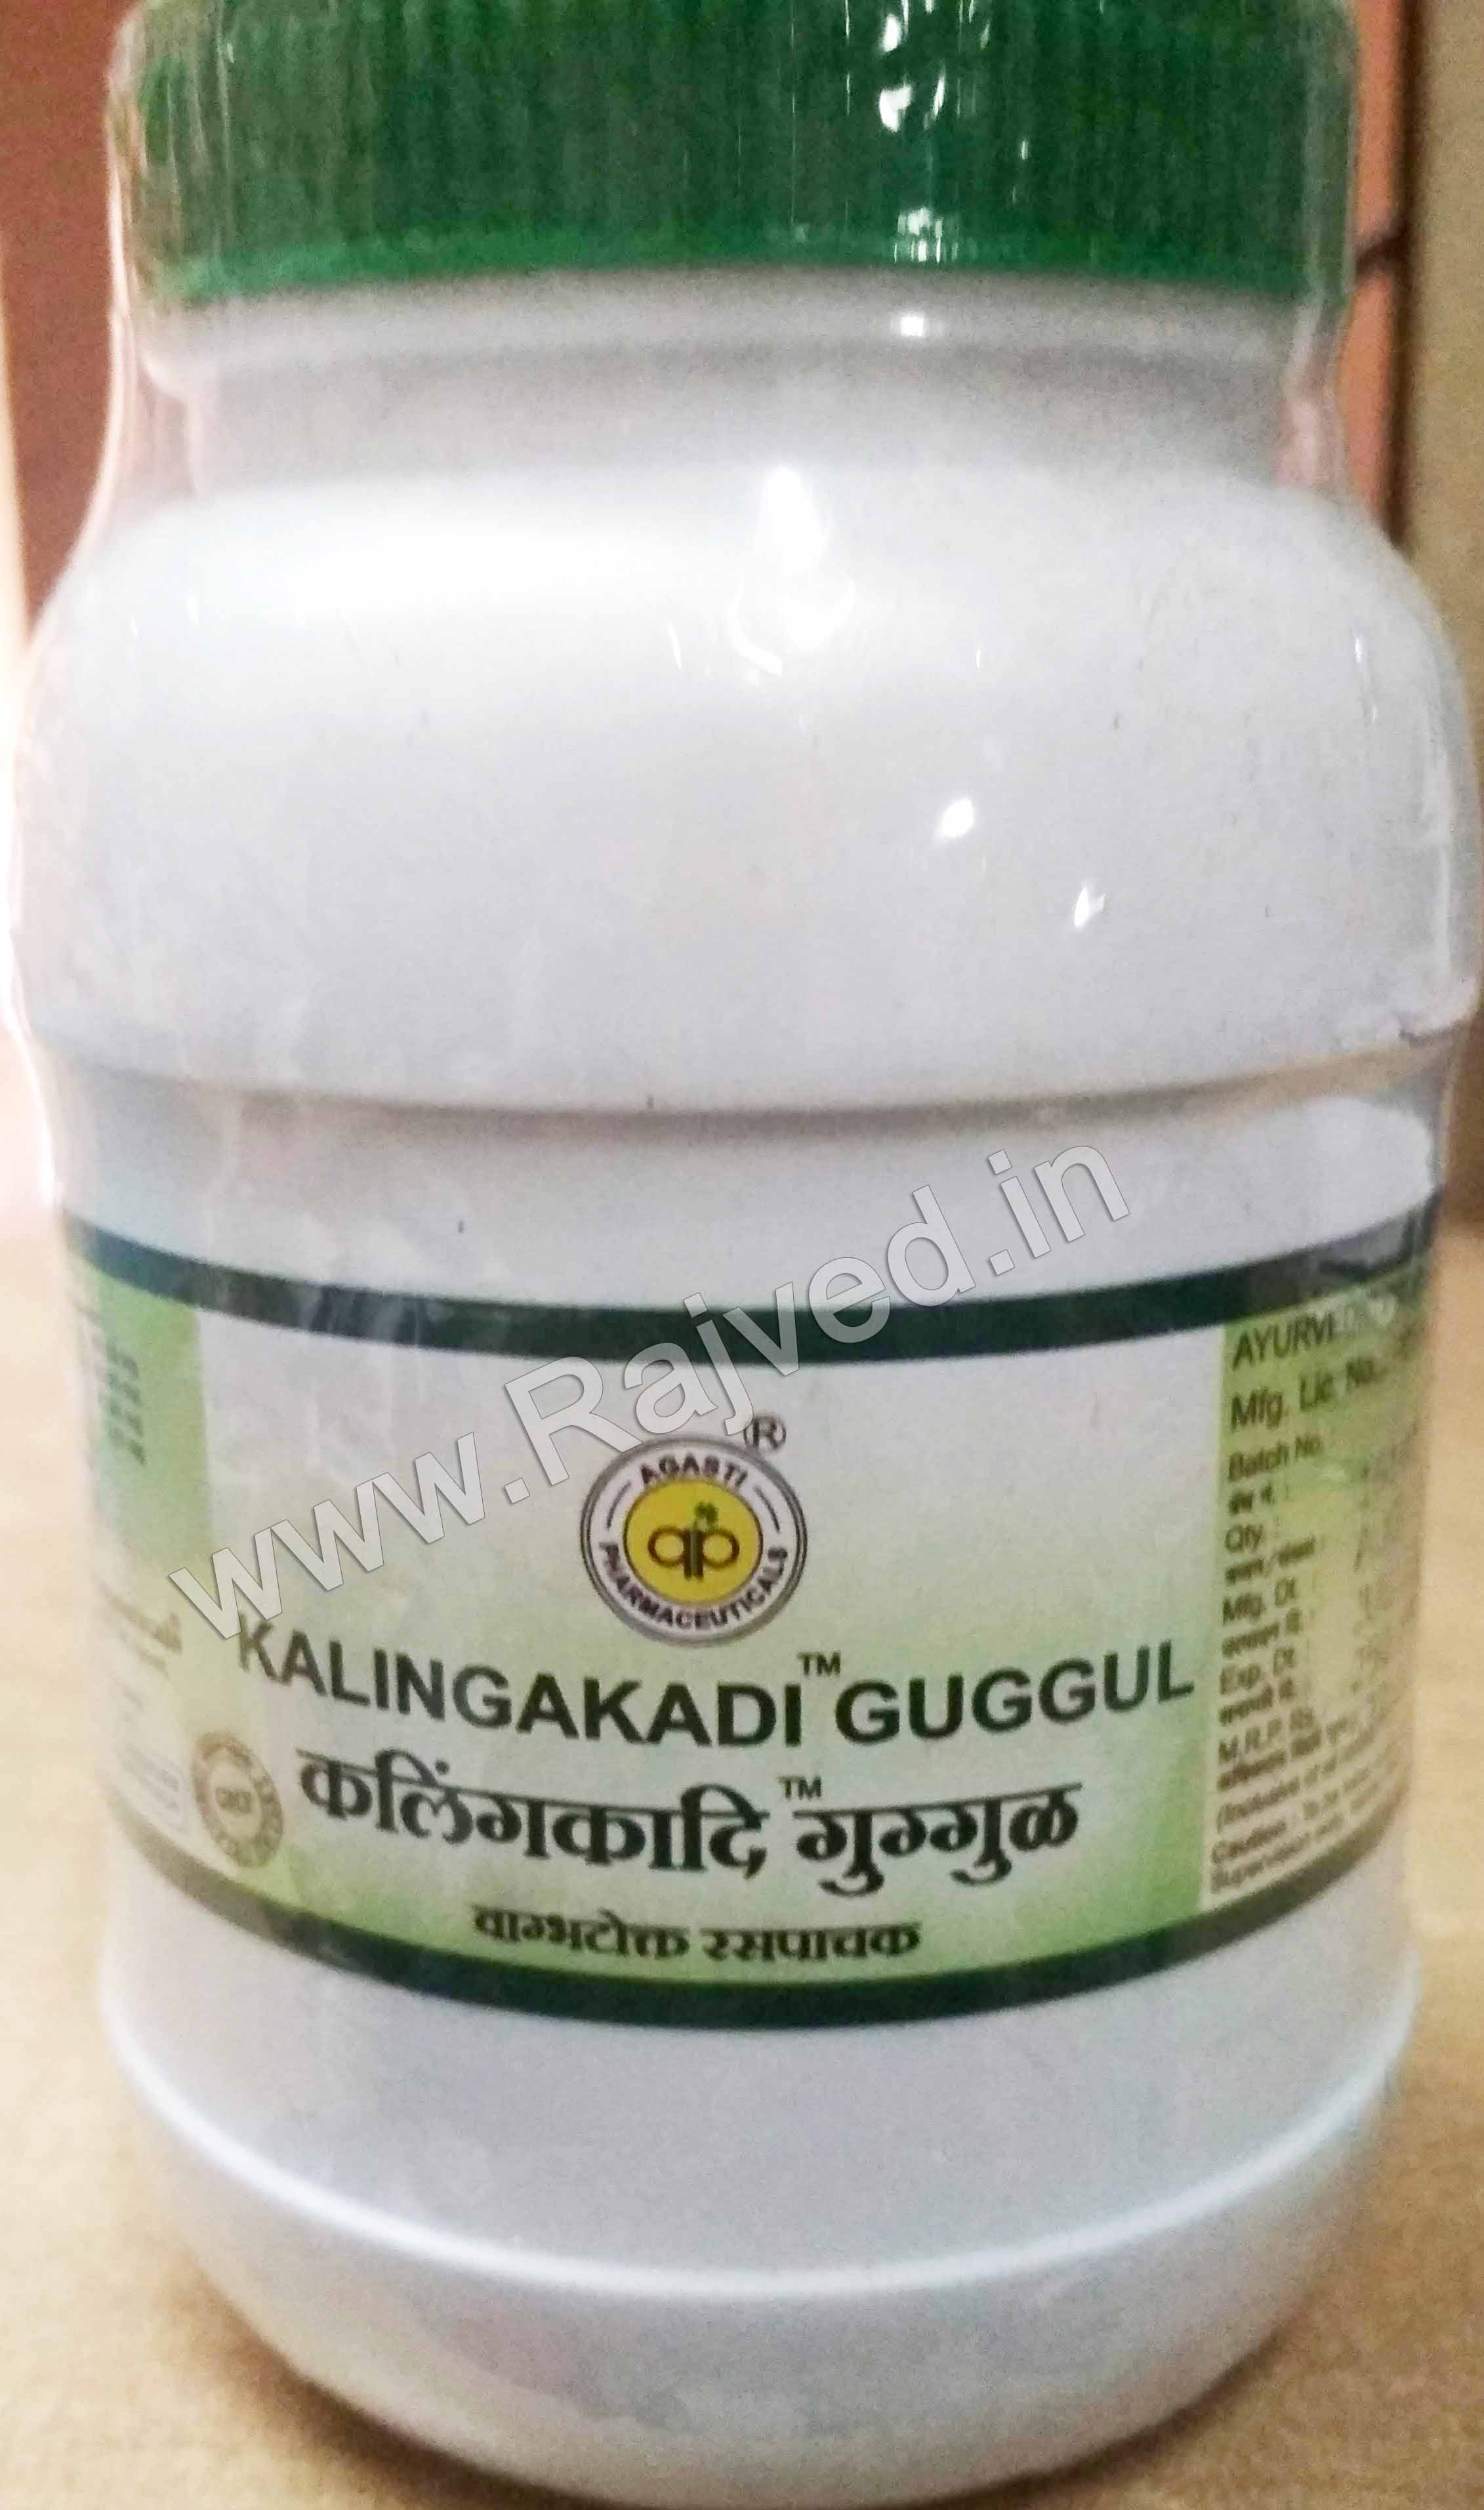 kalingakadi guggul 250 gm 1000 tablet upto 15% off agasti pharmaceuticals